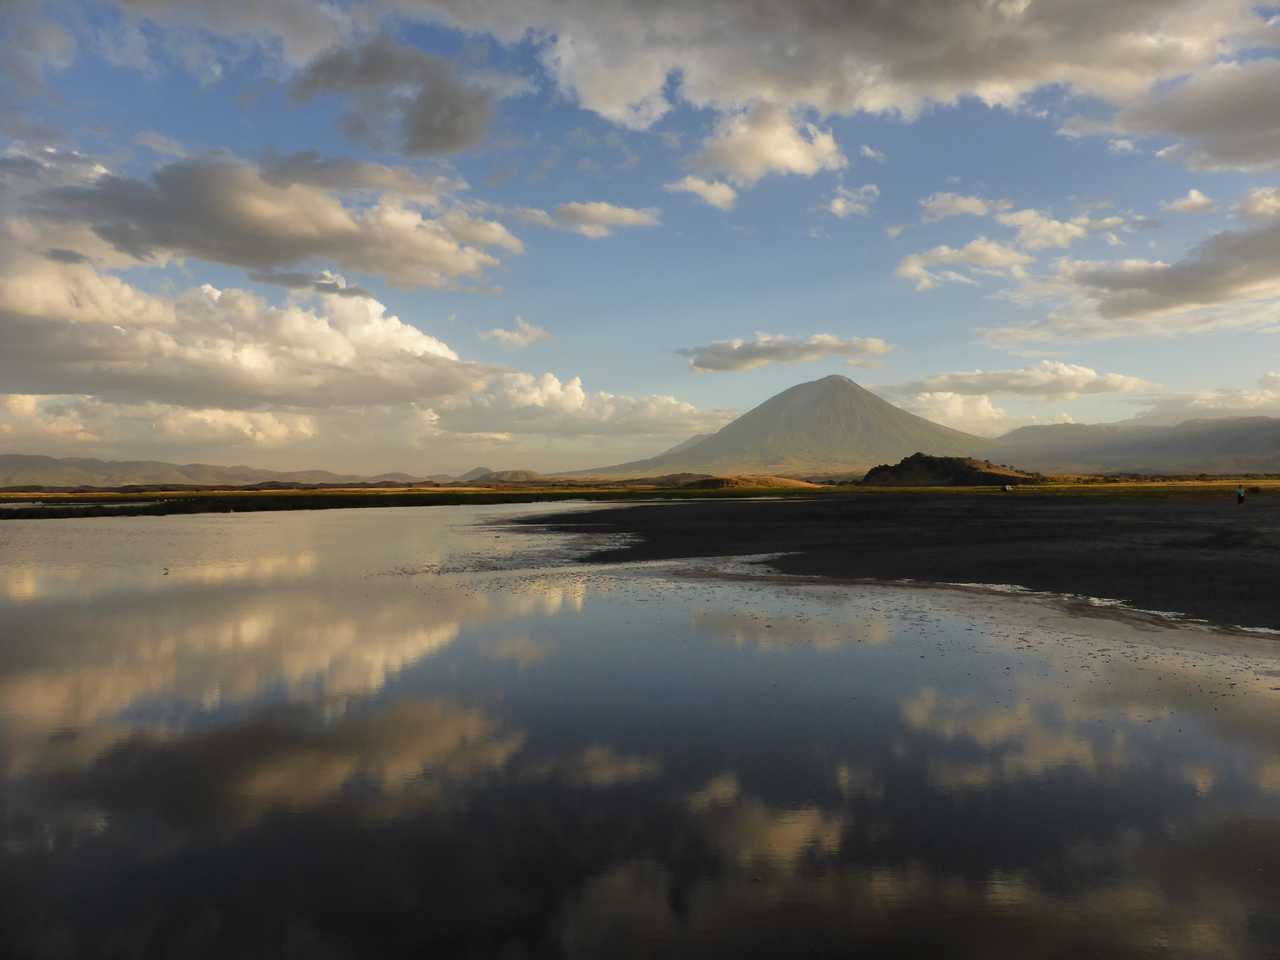 Reflet du volcan Lengai sur le lac Natron